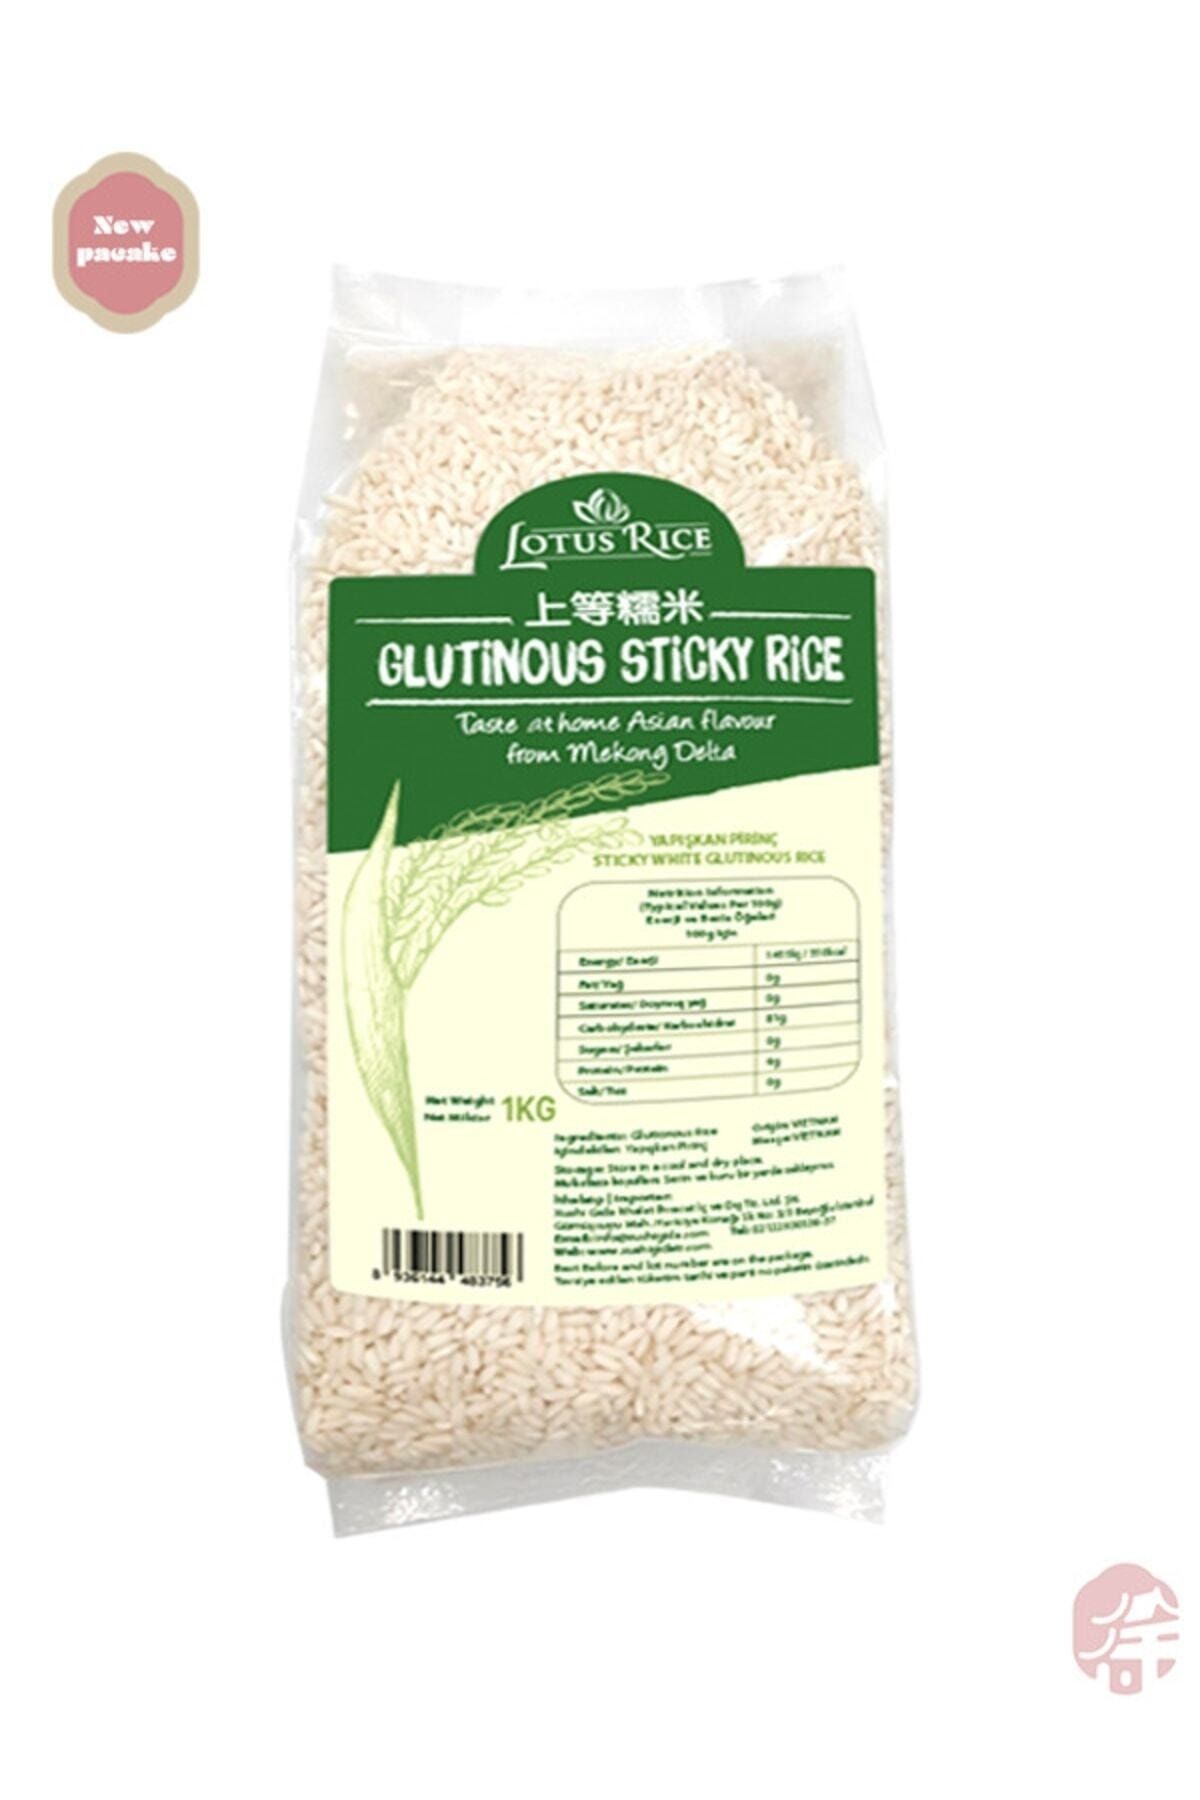 Lotus Yapişkan Pirinç ( Glutinous Sticky Rice) - 1kg